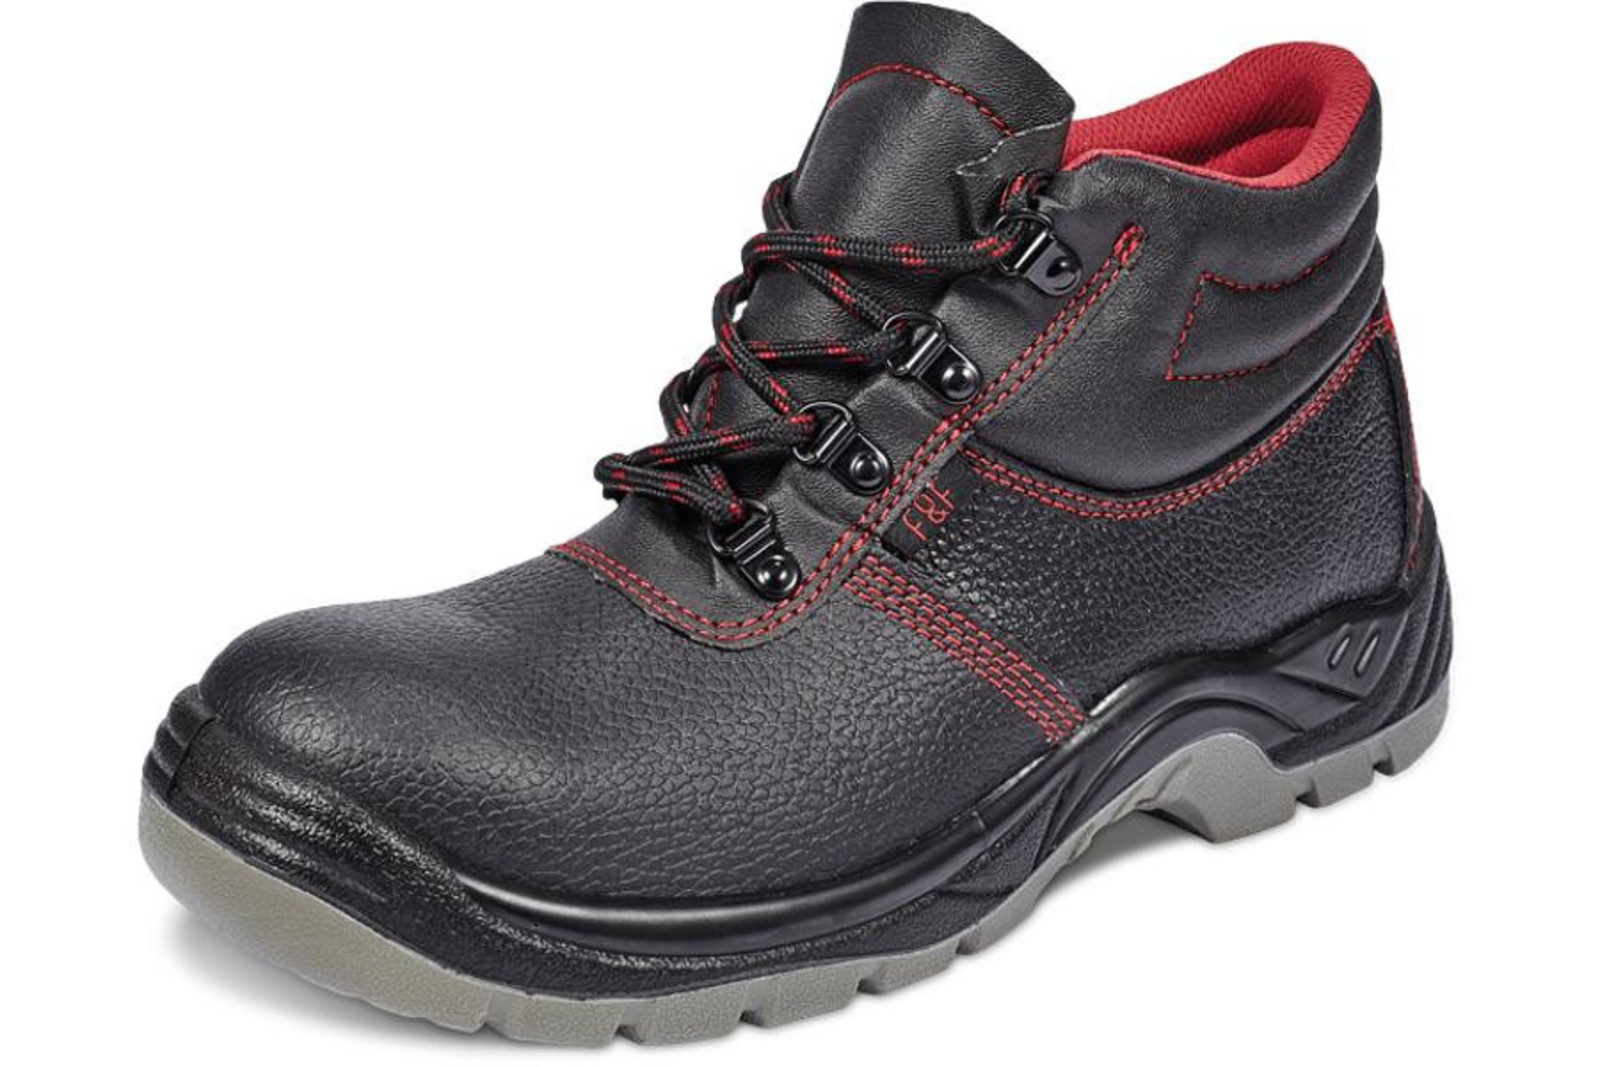 Bezpečnostná obuv SC 03-001 S1P - veľkosť: 44, farba: čierna